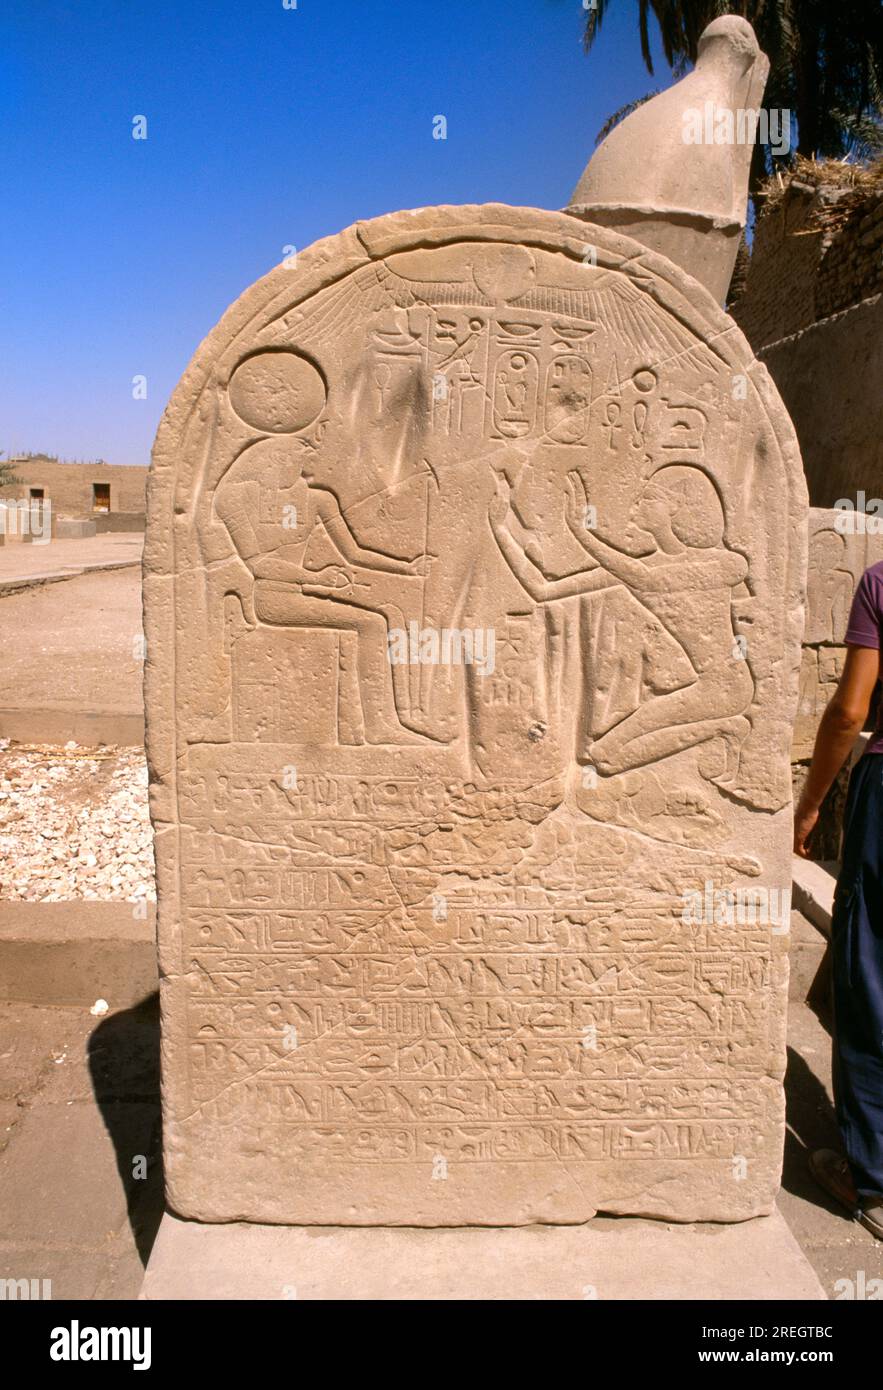 Tempio di Luxor Egitto Seti i - Stela Ra-horakhty - combinazione degli dei Ra e Horus Foto Stock